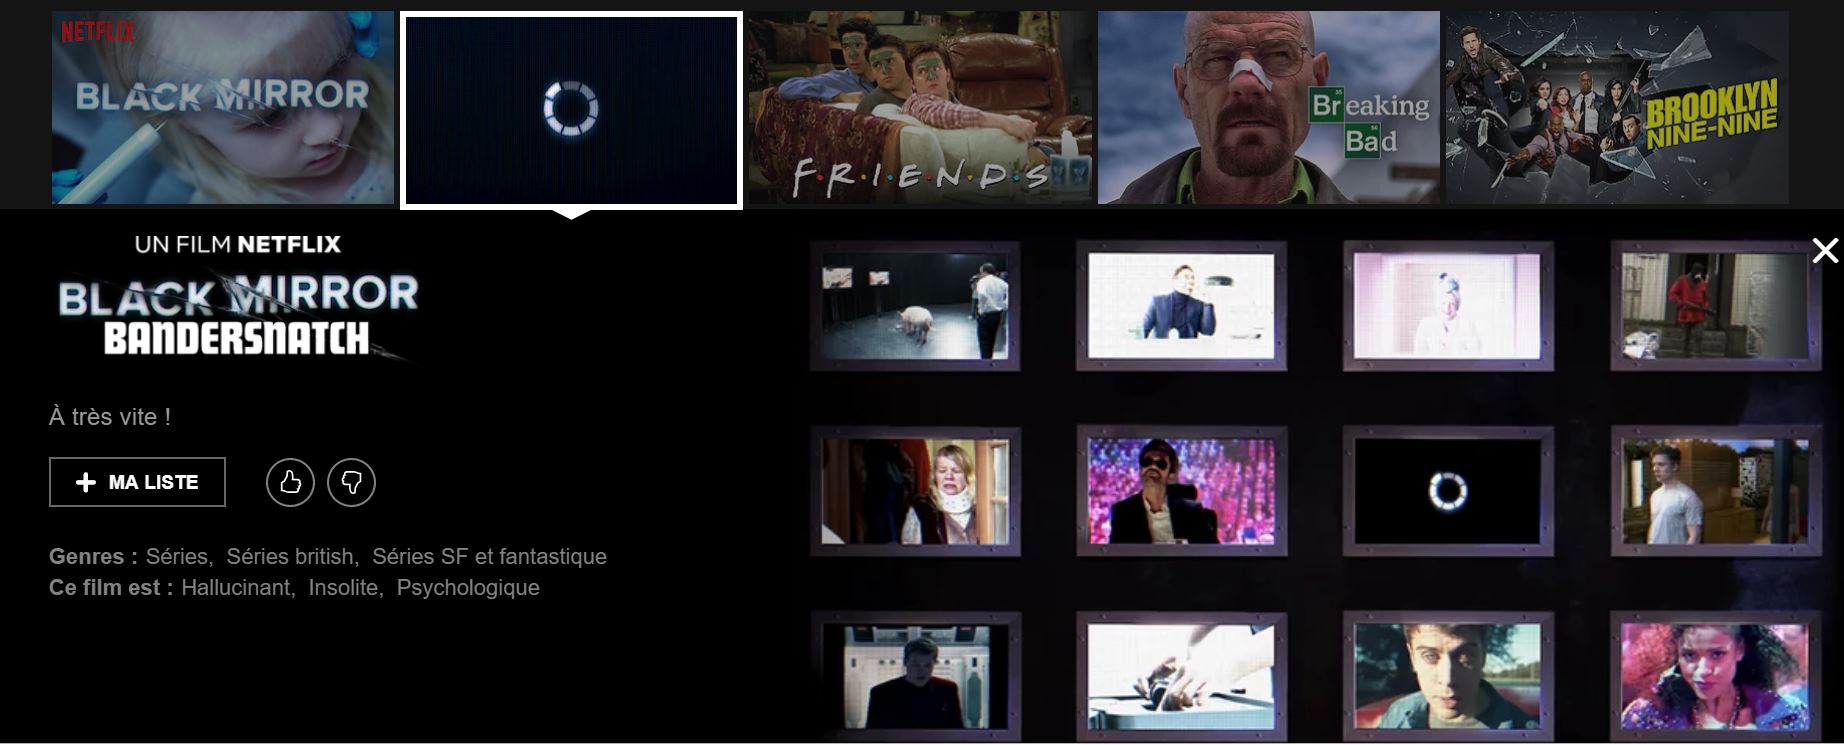 Black Mirror: Bandersnatch sur Netflix